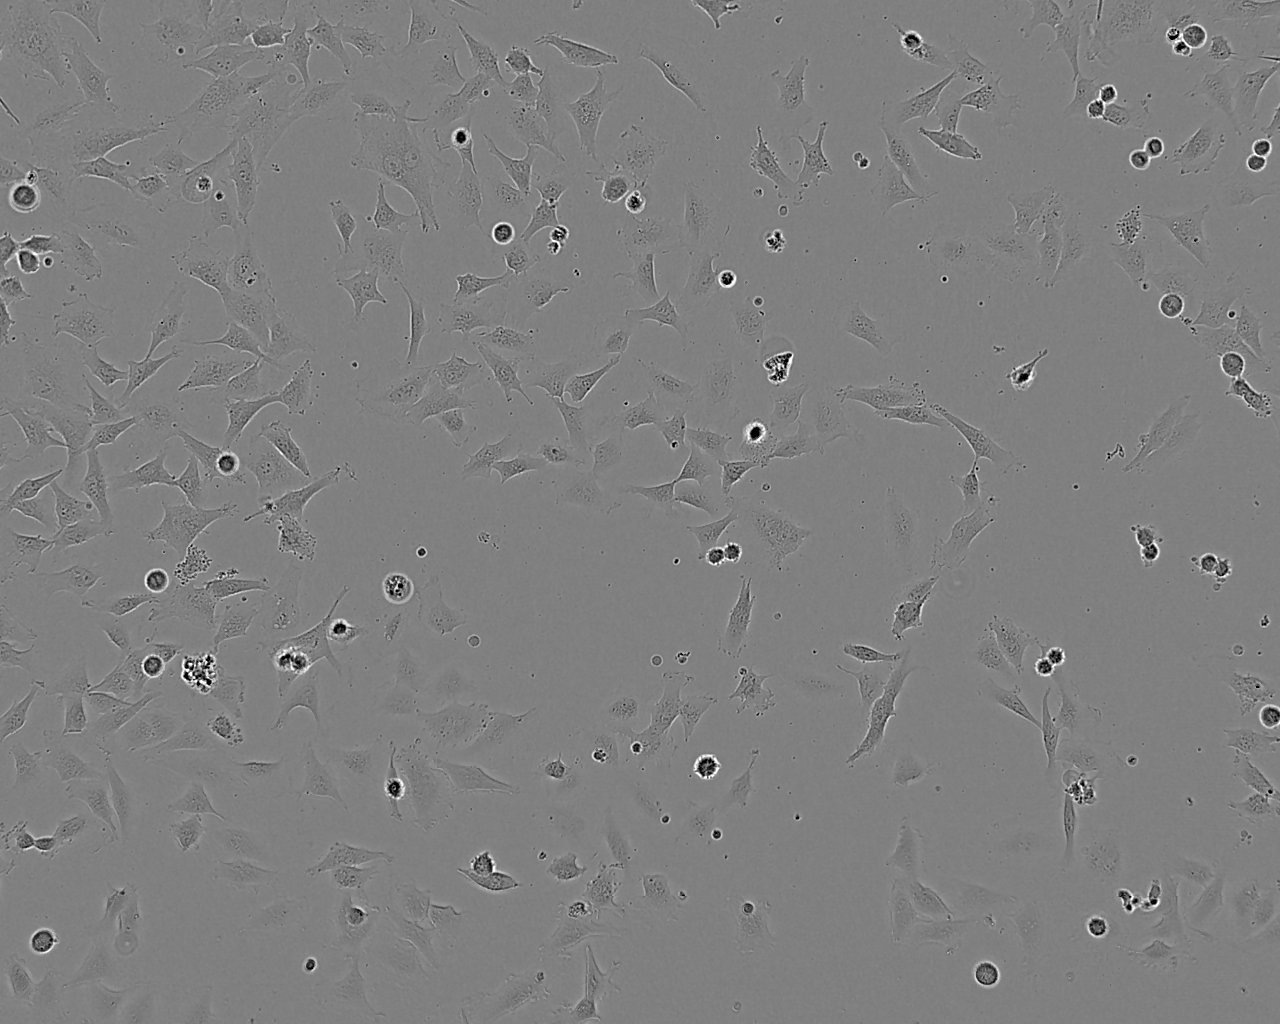 GT1-1 Cell:小鼠垂体瘤细胞系,GT1-1 Cell